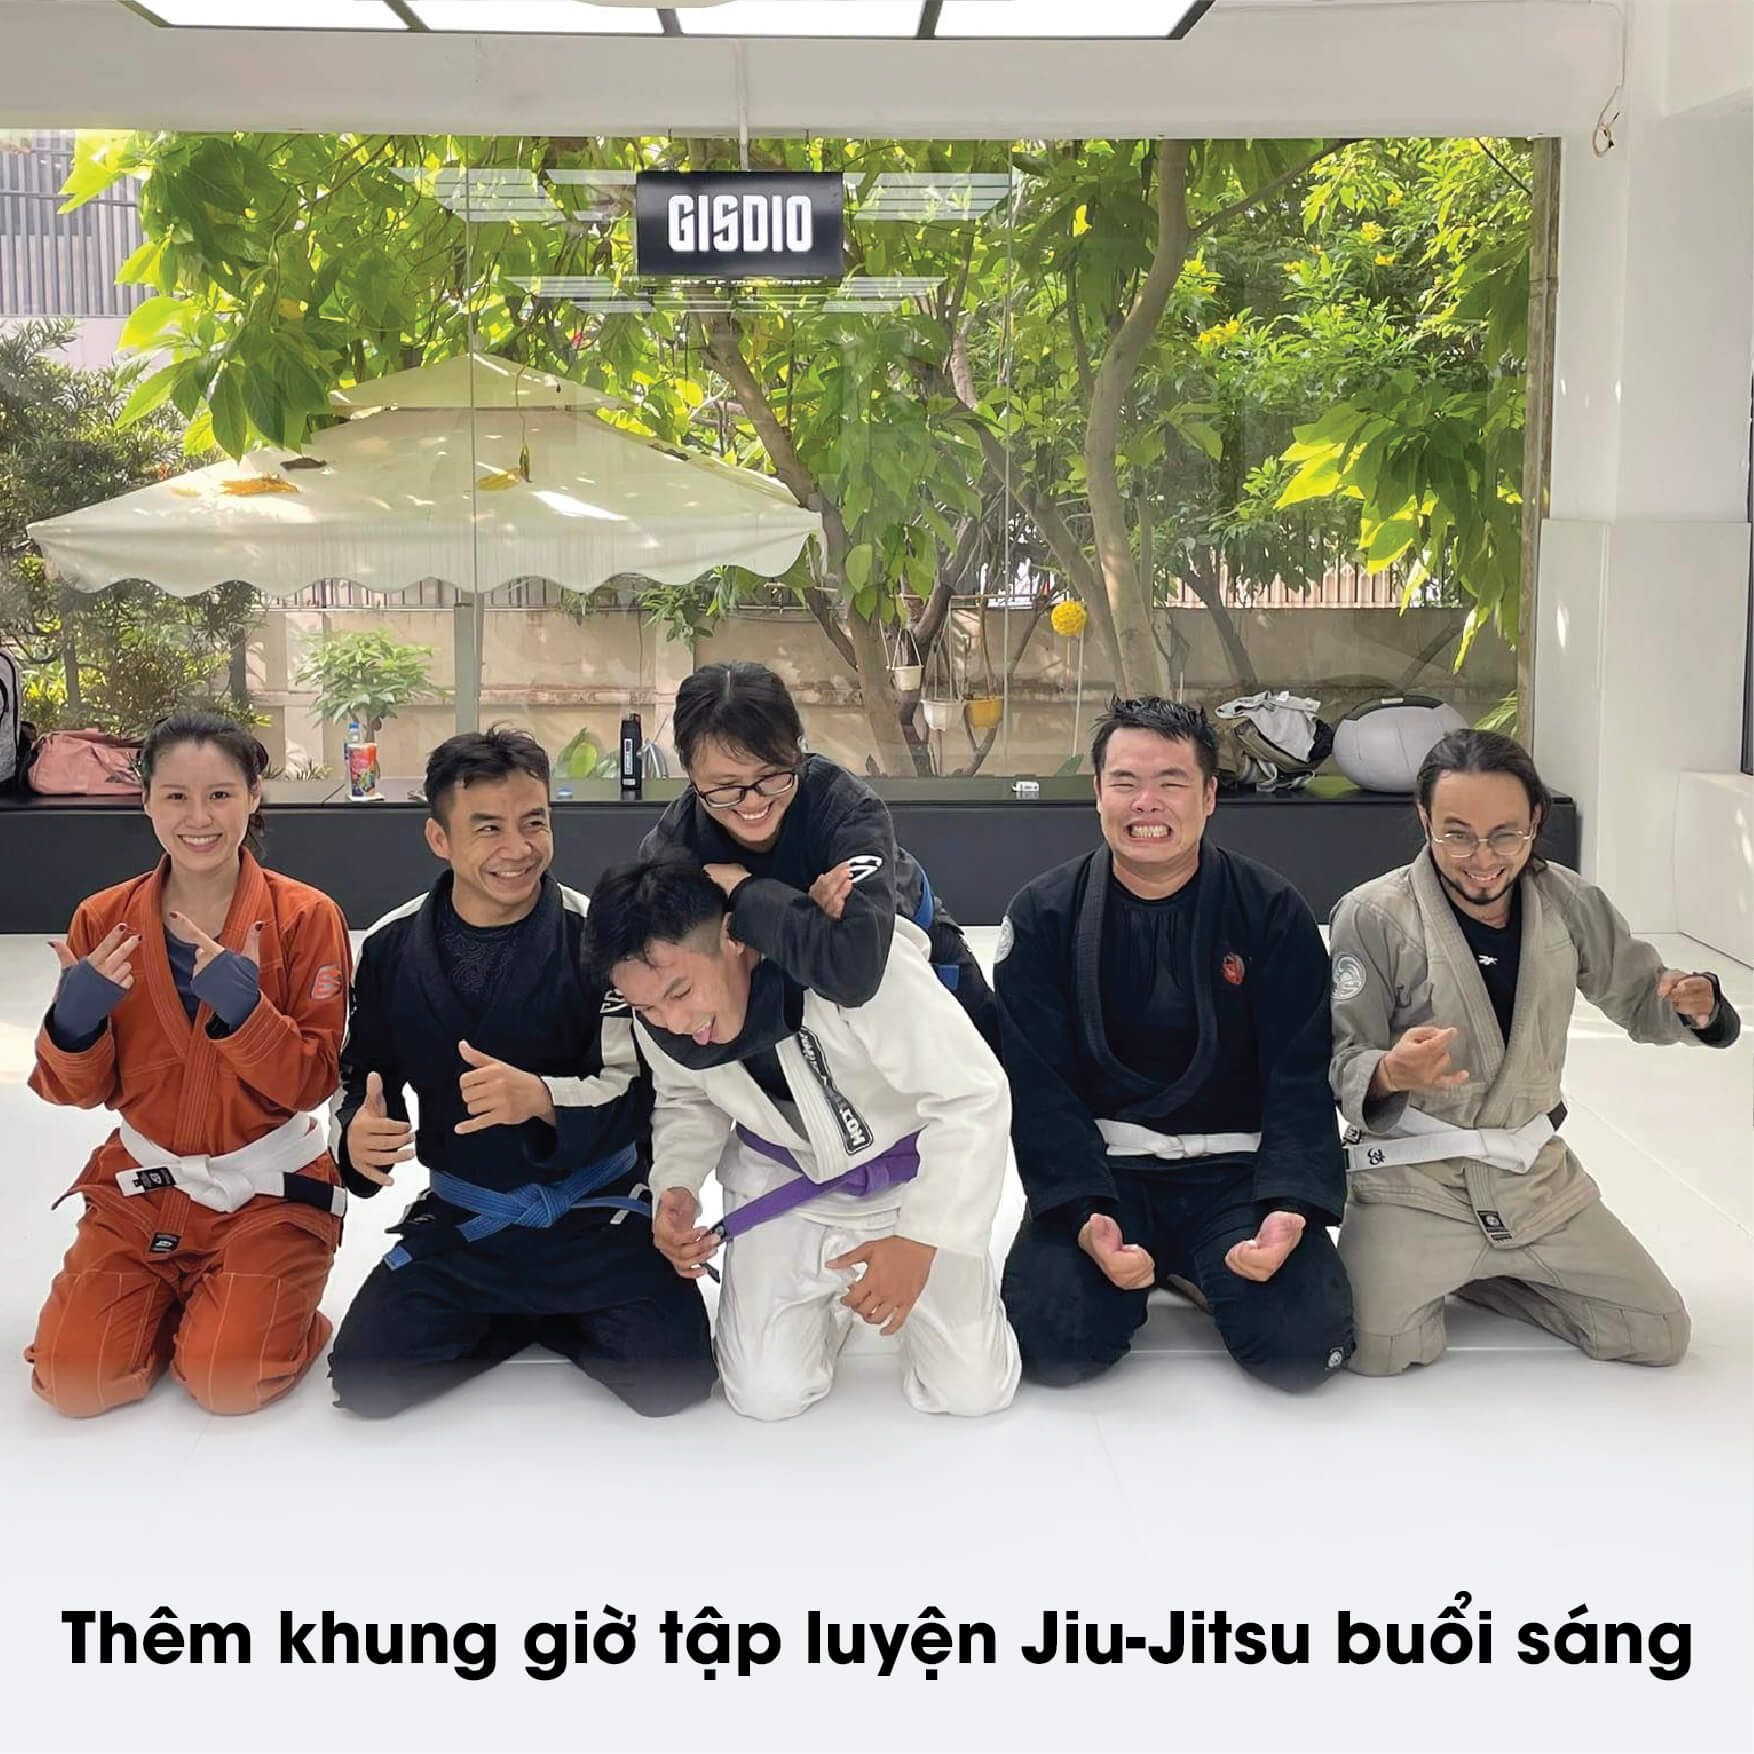 Jiu-Jitsu buổi sáng Gisdio